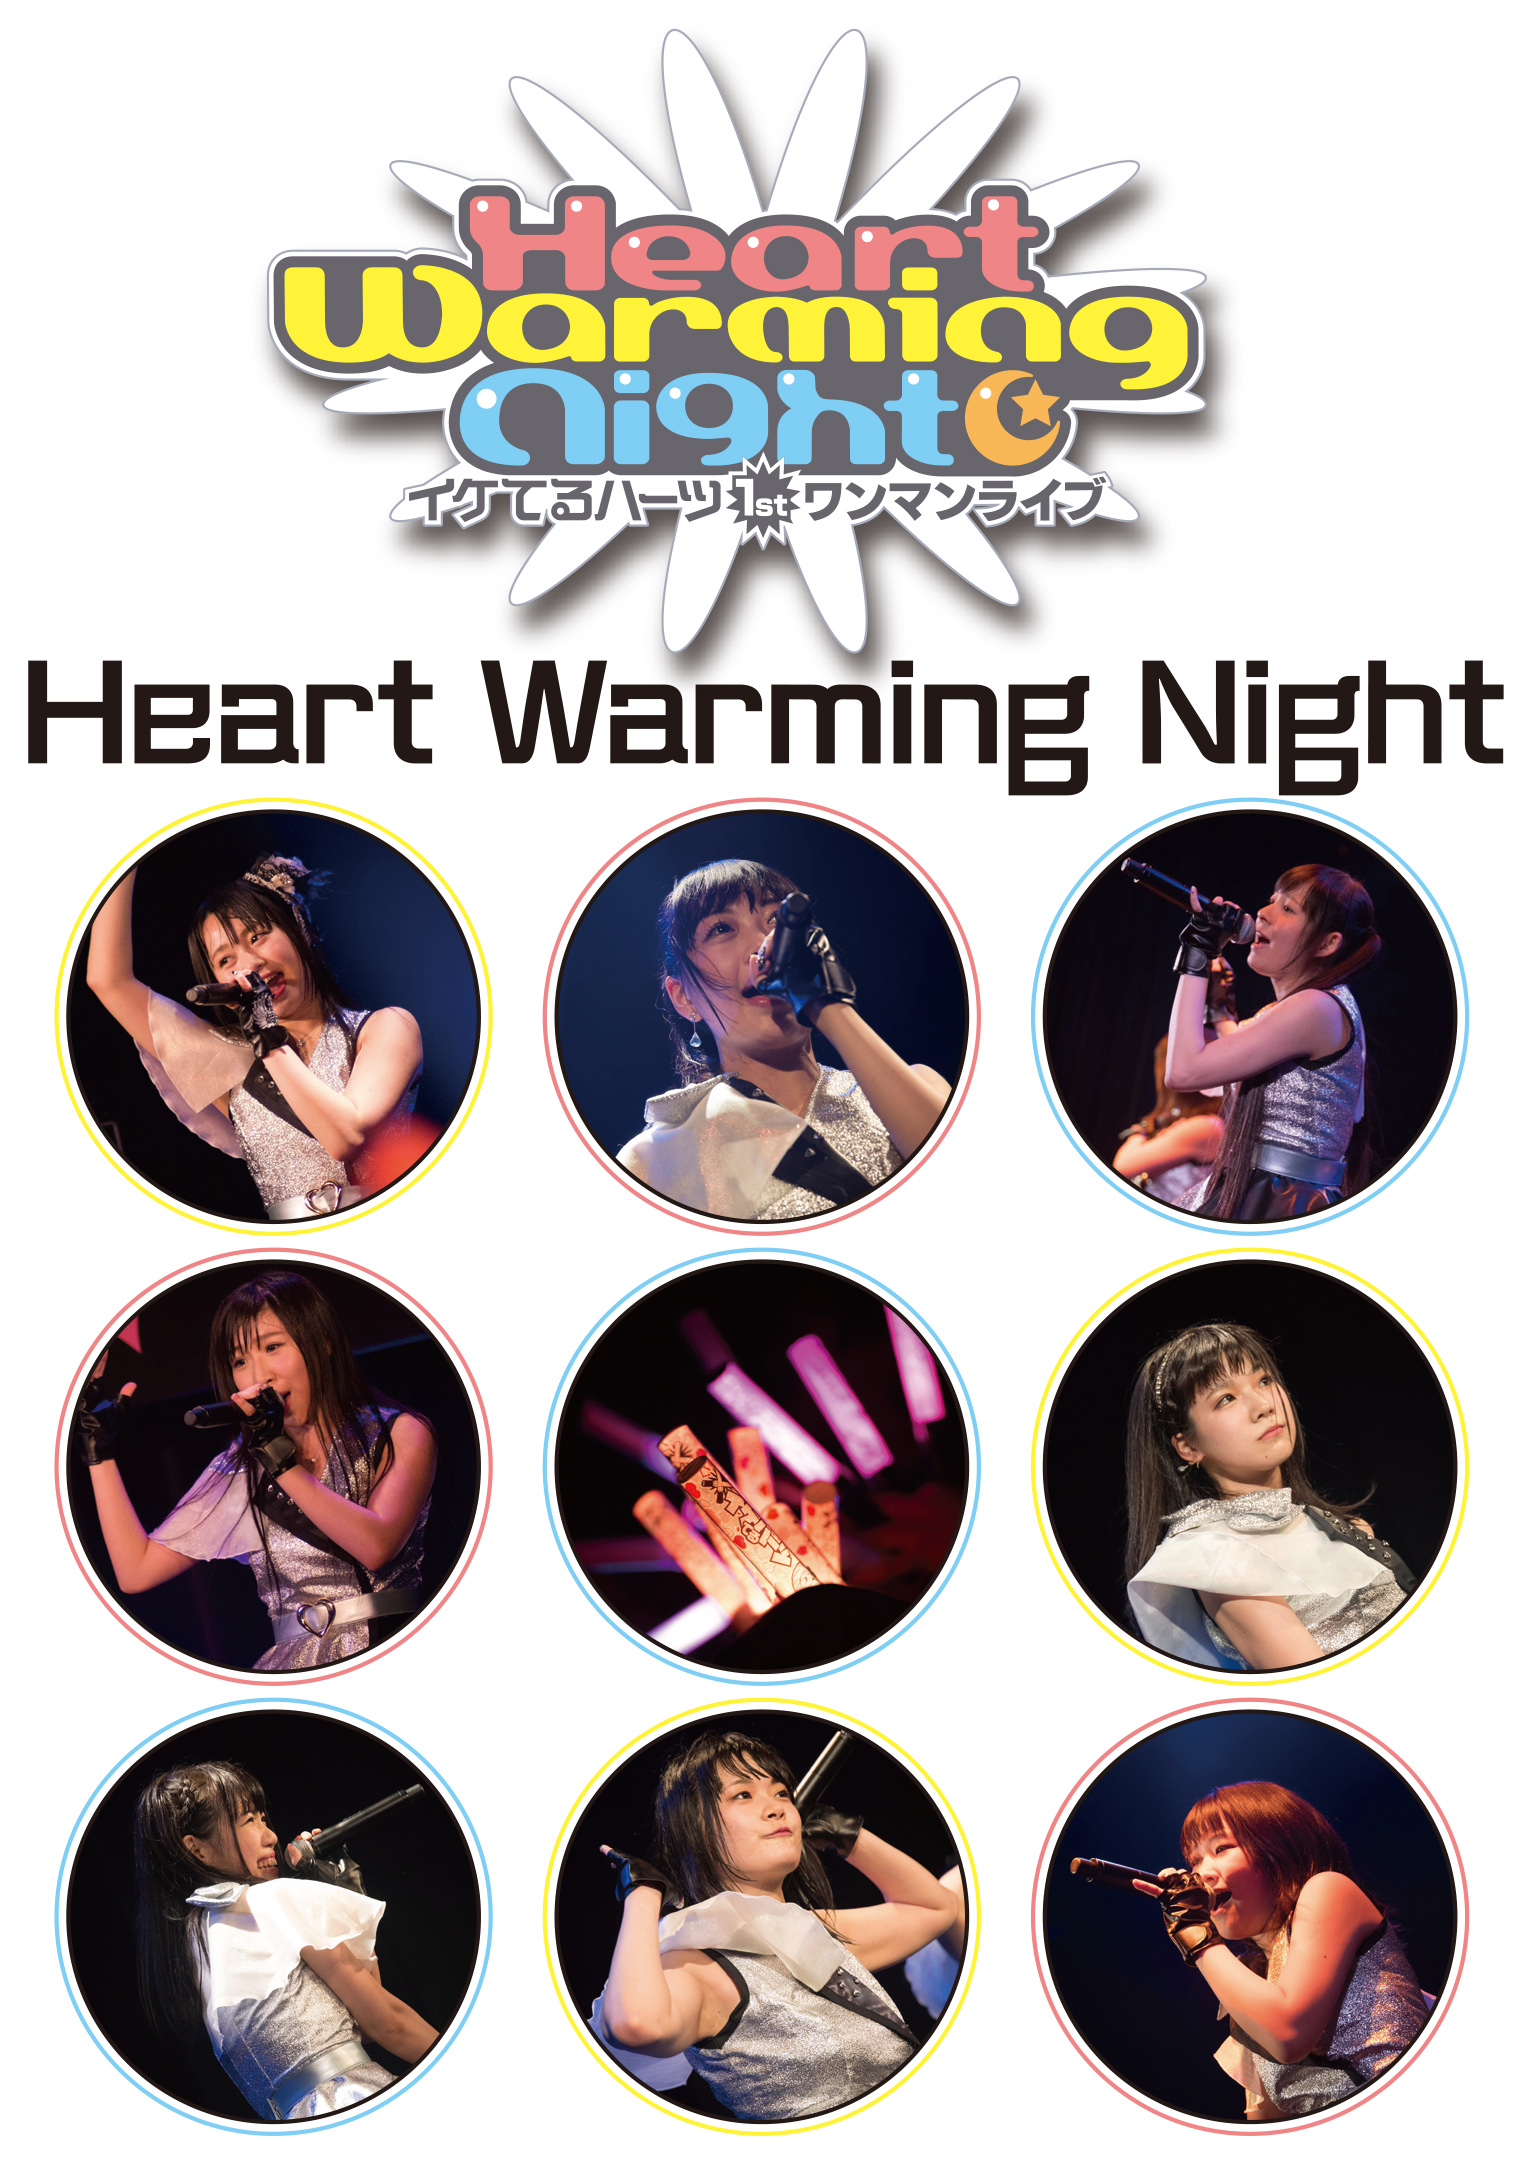 イケてるハーツ 1stワンマンライブ 「Heart Warming Night」 – MAGES. MUSIC